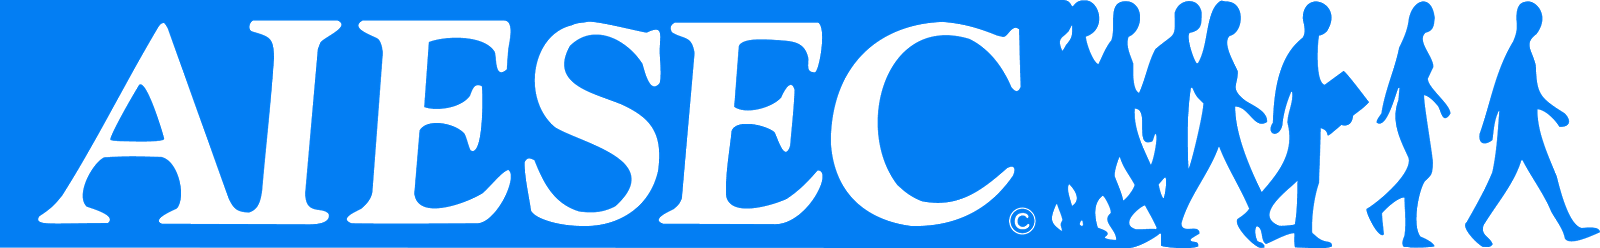 AIESEC logo blue